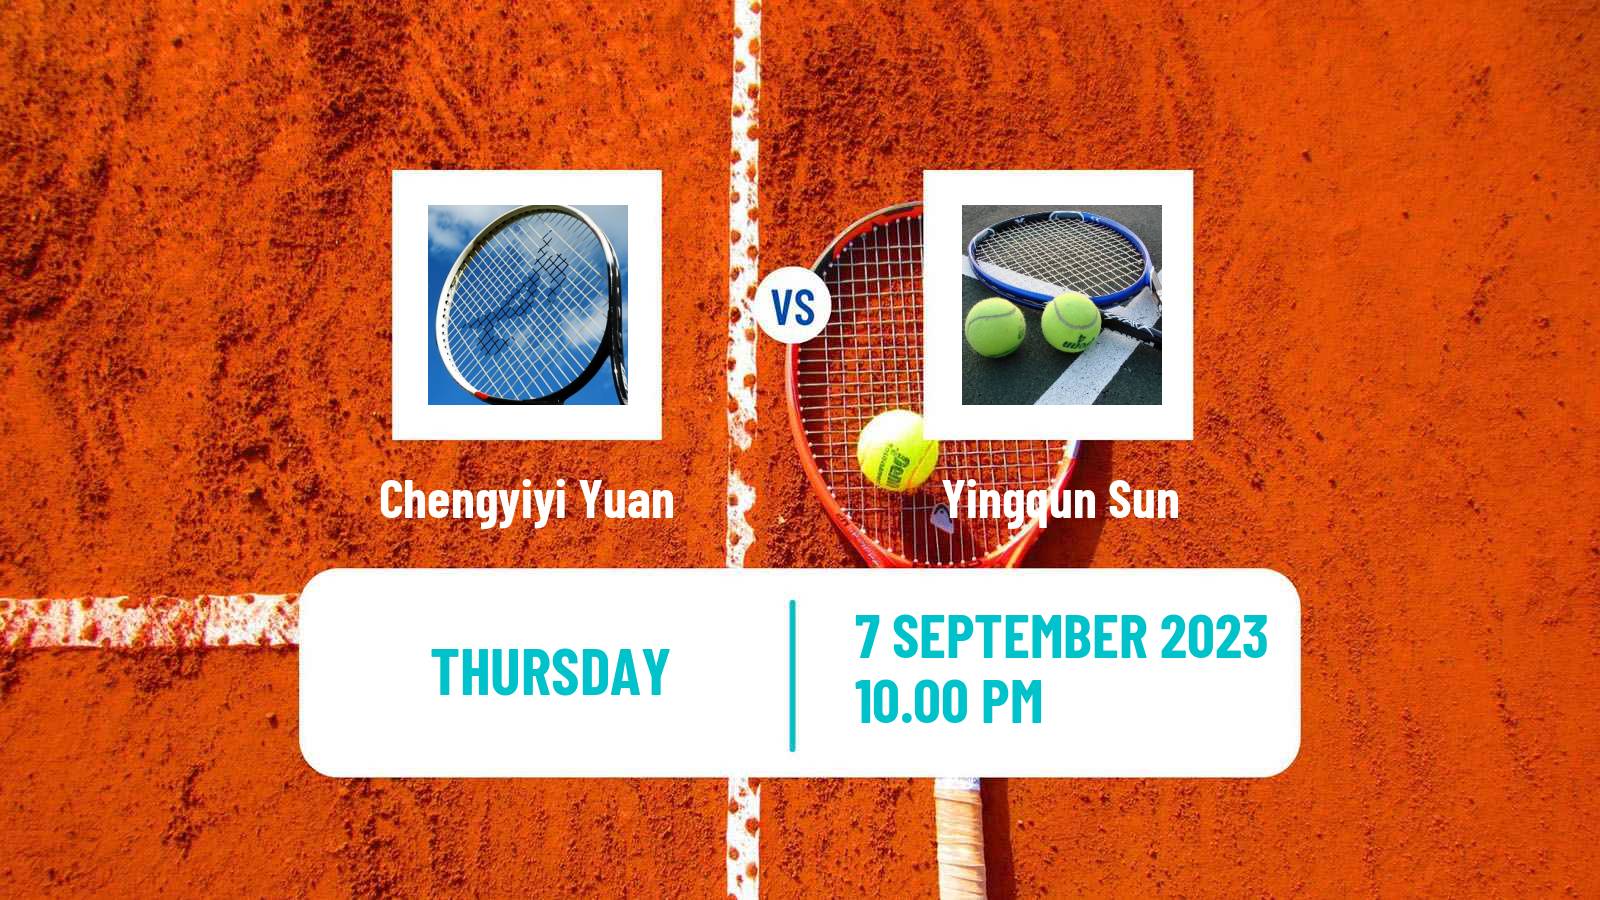 Tennis ITF W15 Shenzhen Women Chengyiyi Yuan - Yingqun Sun